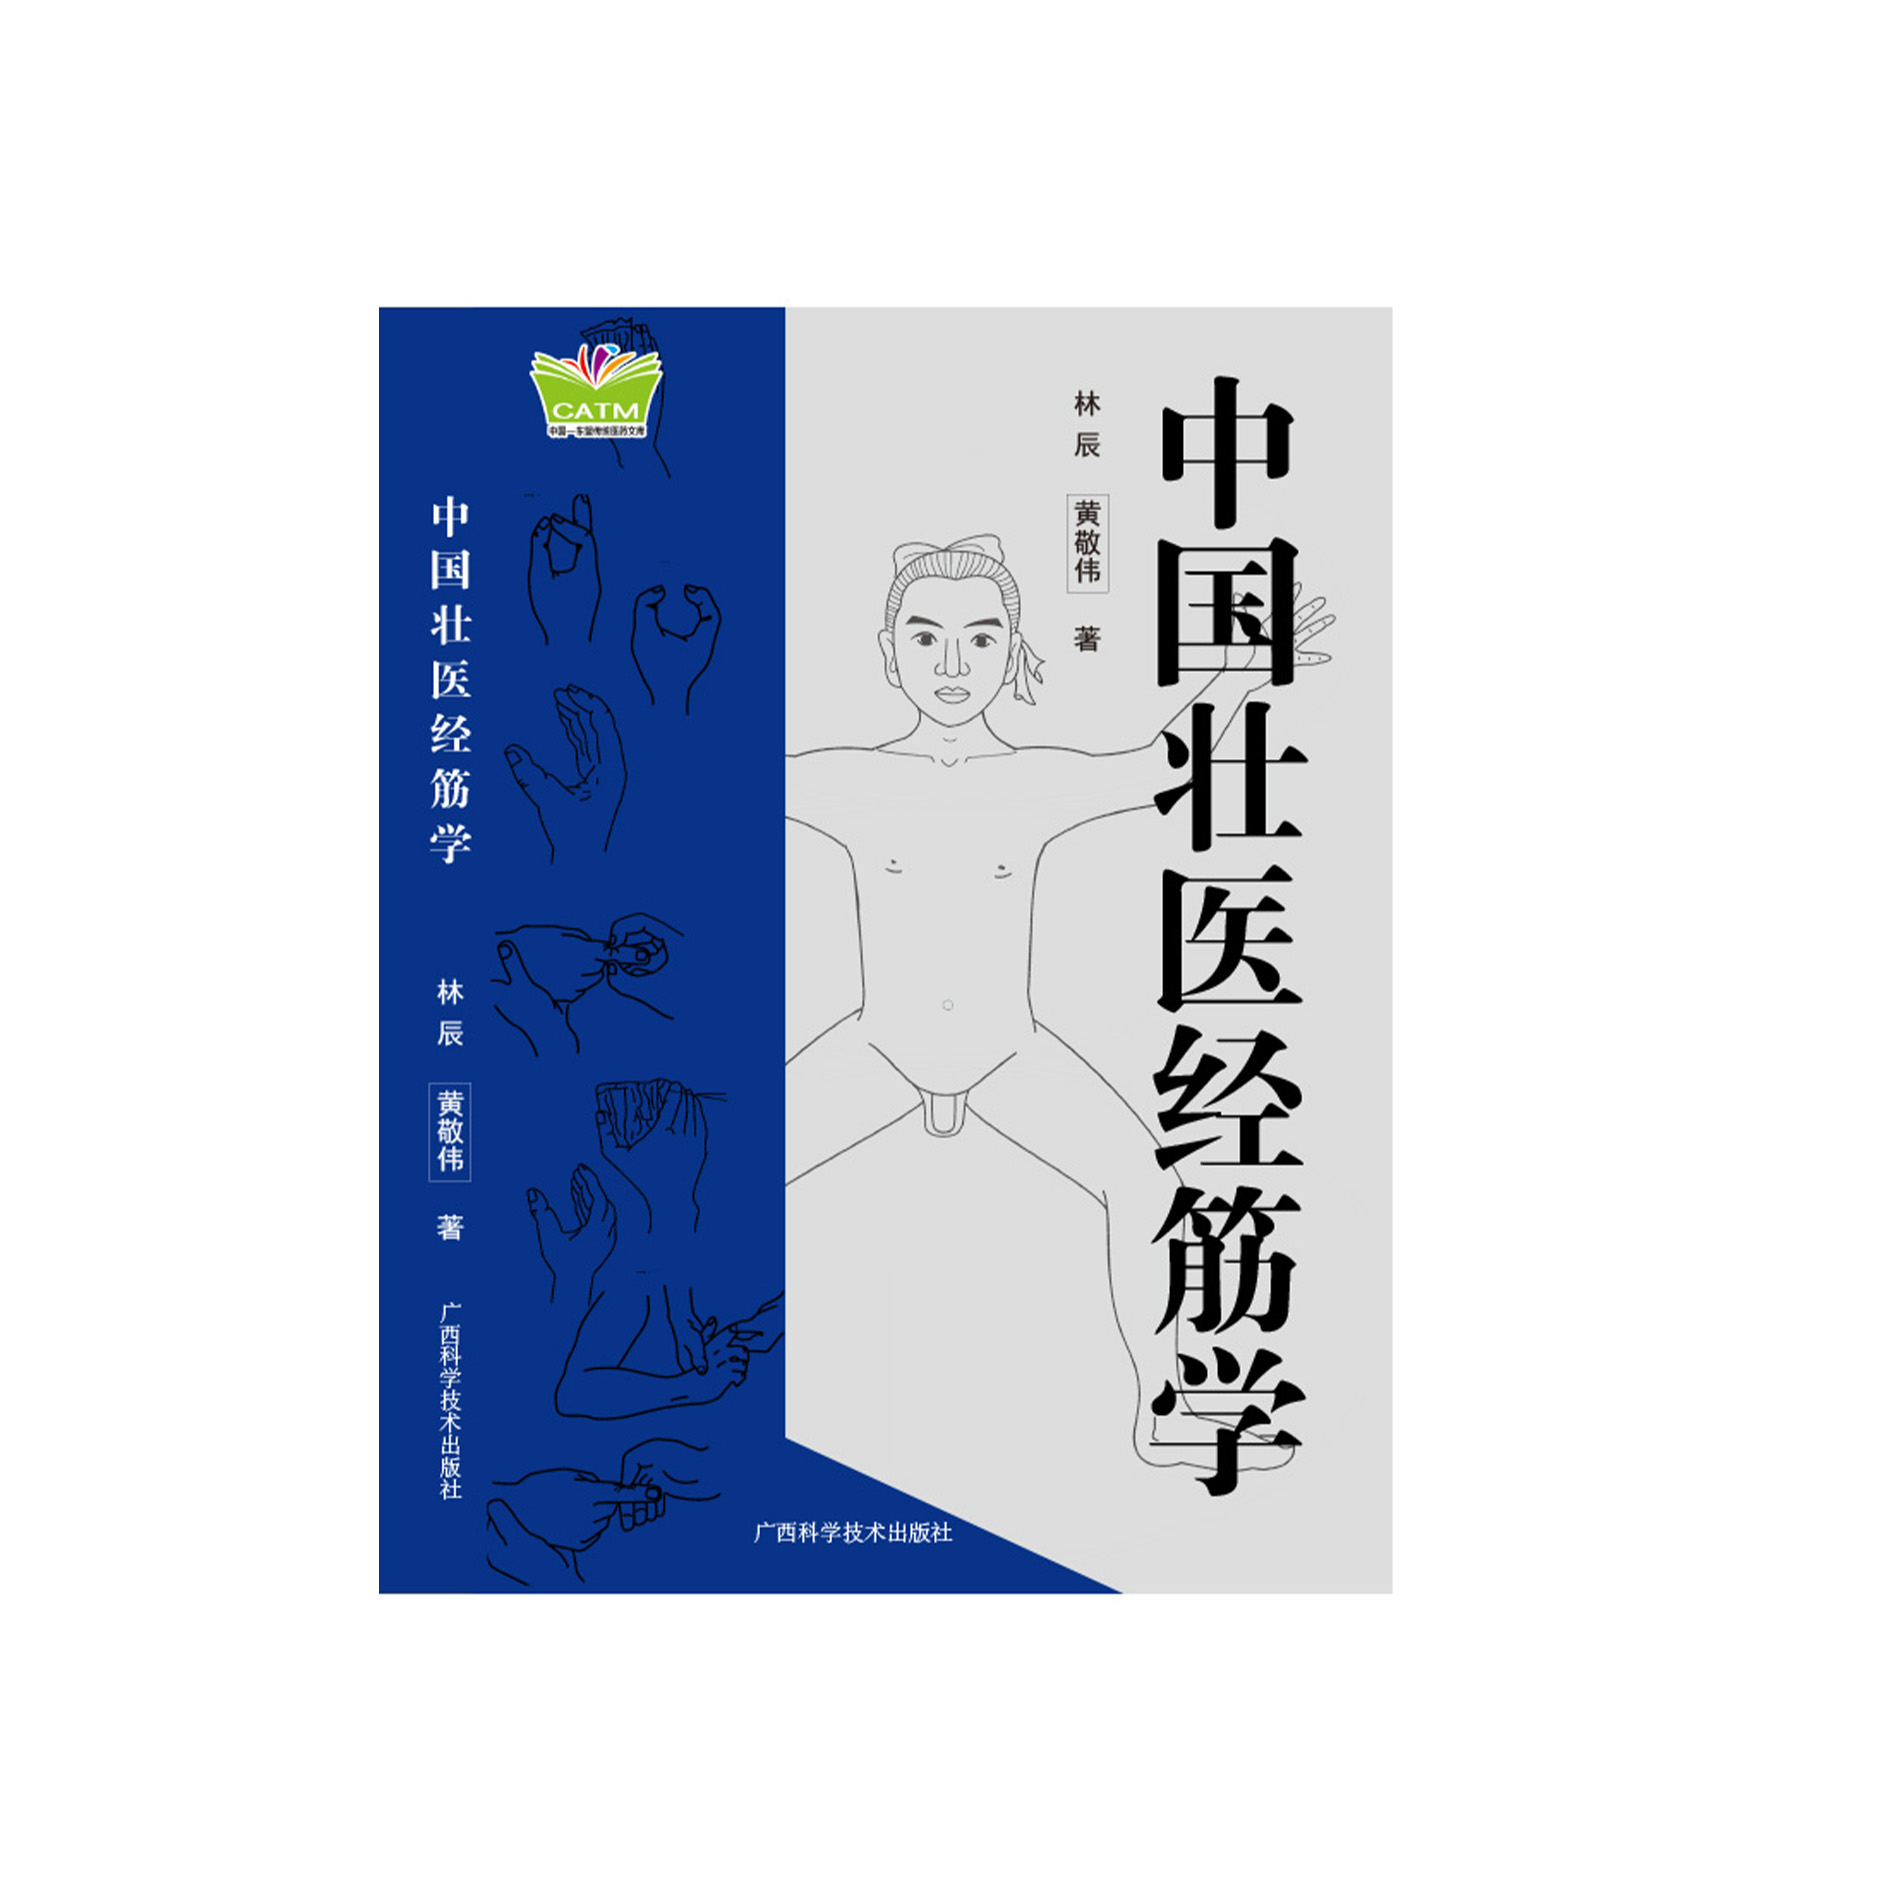 Daluyan na Litid Teorya sa Tsinong Medisina ng Zhuang